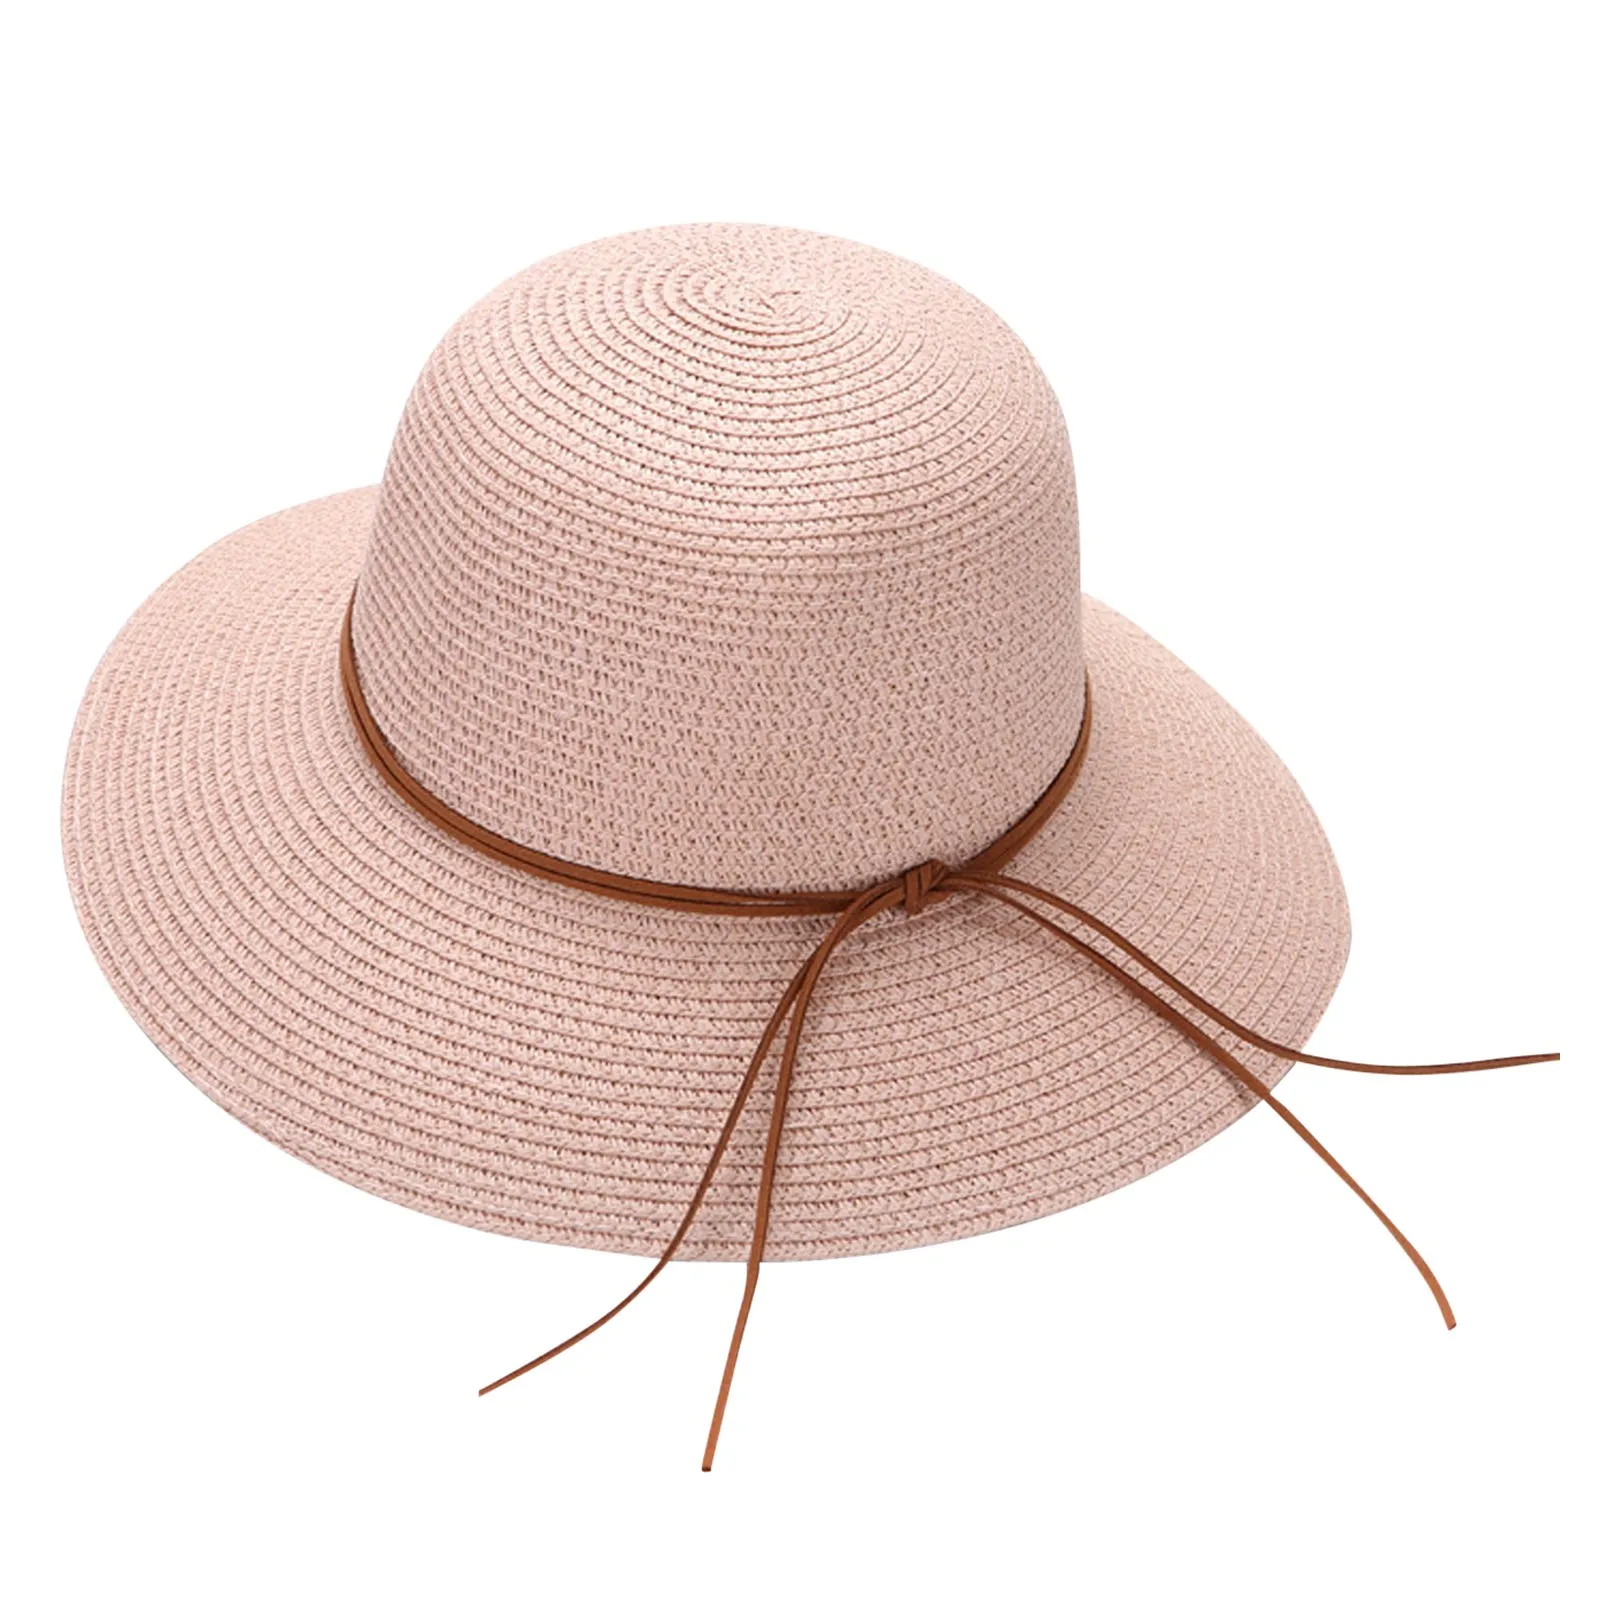 נשים קיץ רחב כובע קש חוף מתקפל שמש כובעים רפוי להפשיל סאן קאפ UPF 50+ כובעי בייסבול החוף כובעים גברים5